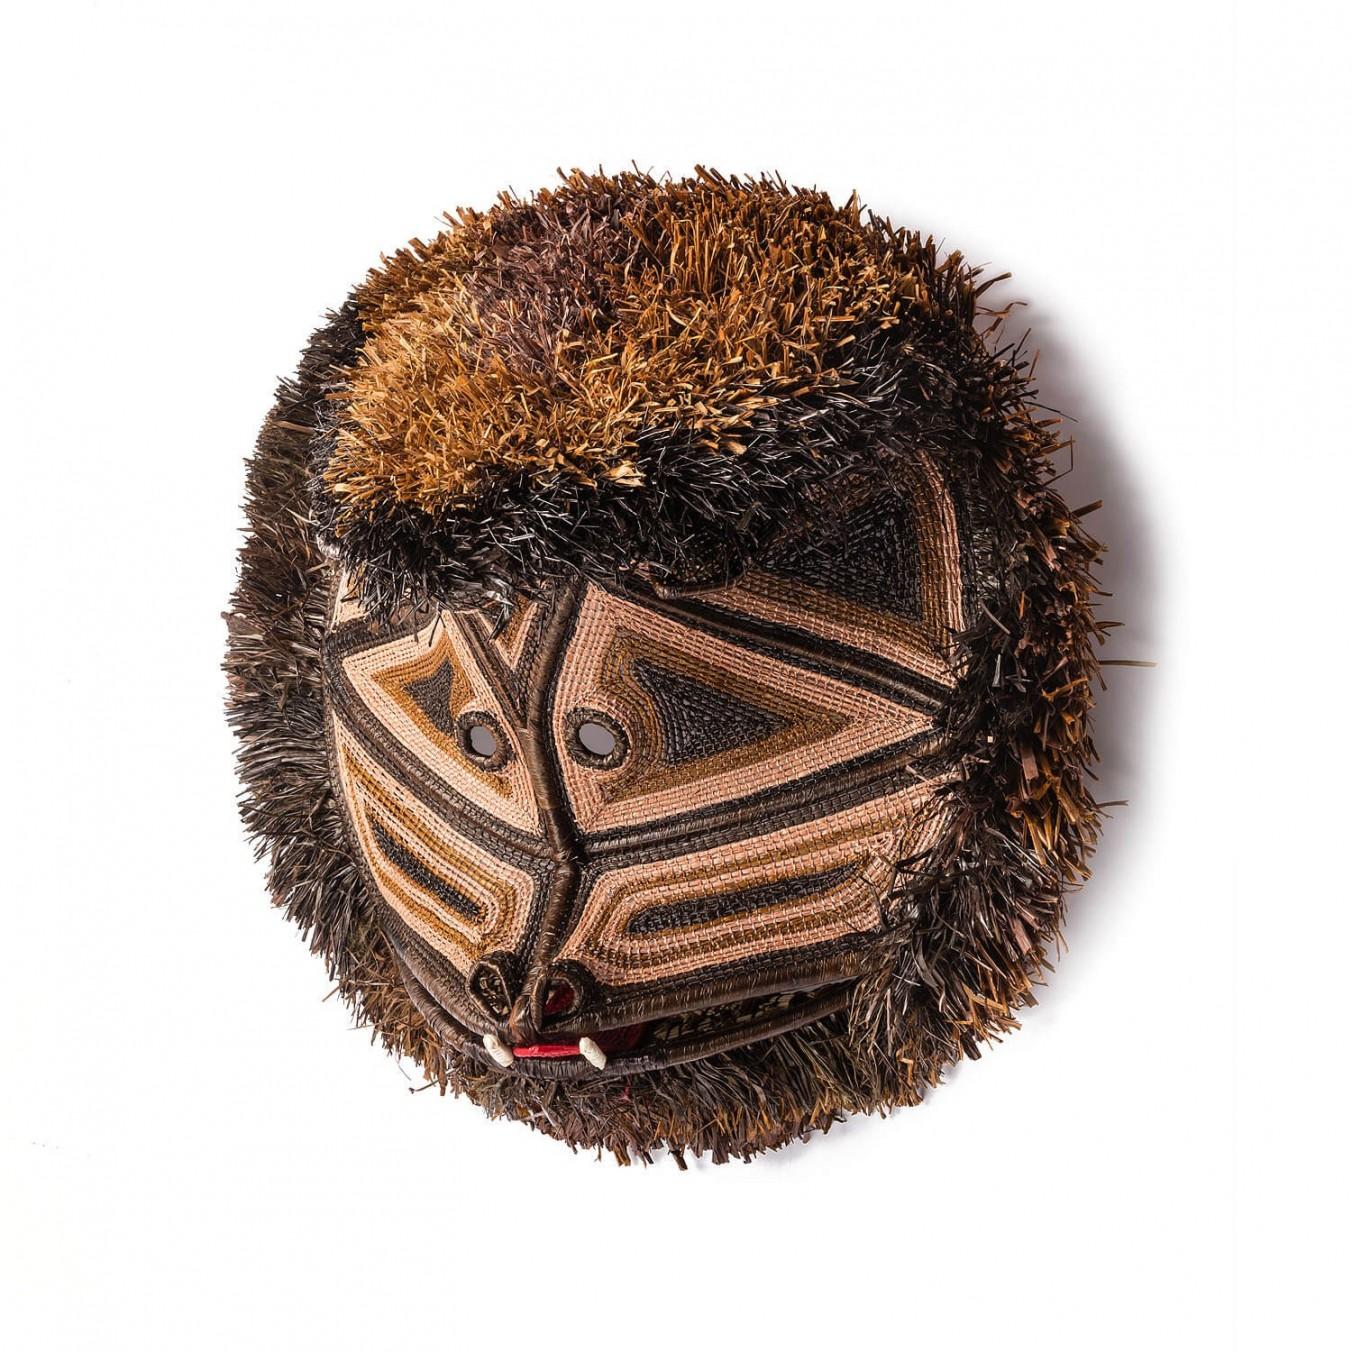 Dekorative handgewebte Maske aus Panama, Nemboro Mono von Ethic&Tropic

Diese außergewöhnlichen Kunst- und Dekorationsgegenstände stammen aus dem schamanischen Glauben und den Ritualen der indigenen Embera-Stämme in Panama. Durch die Schamanen